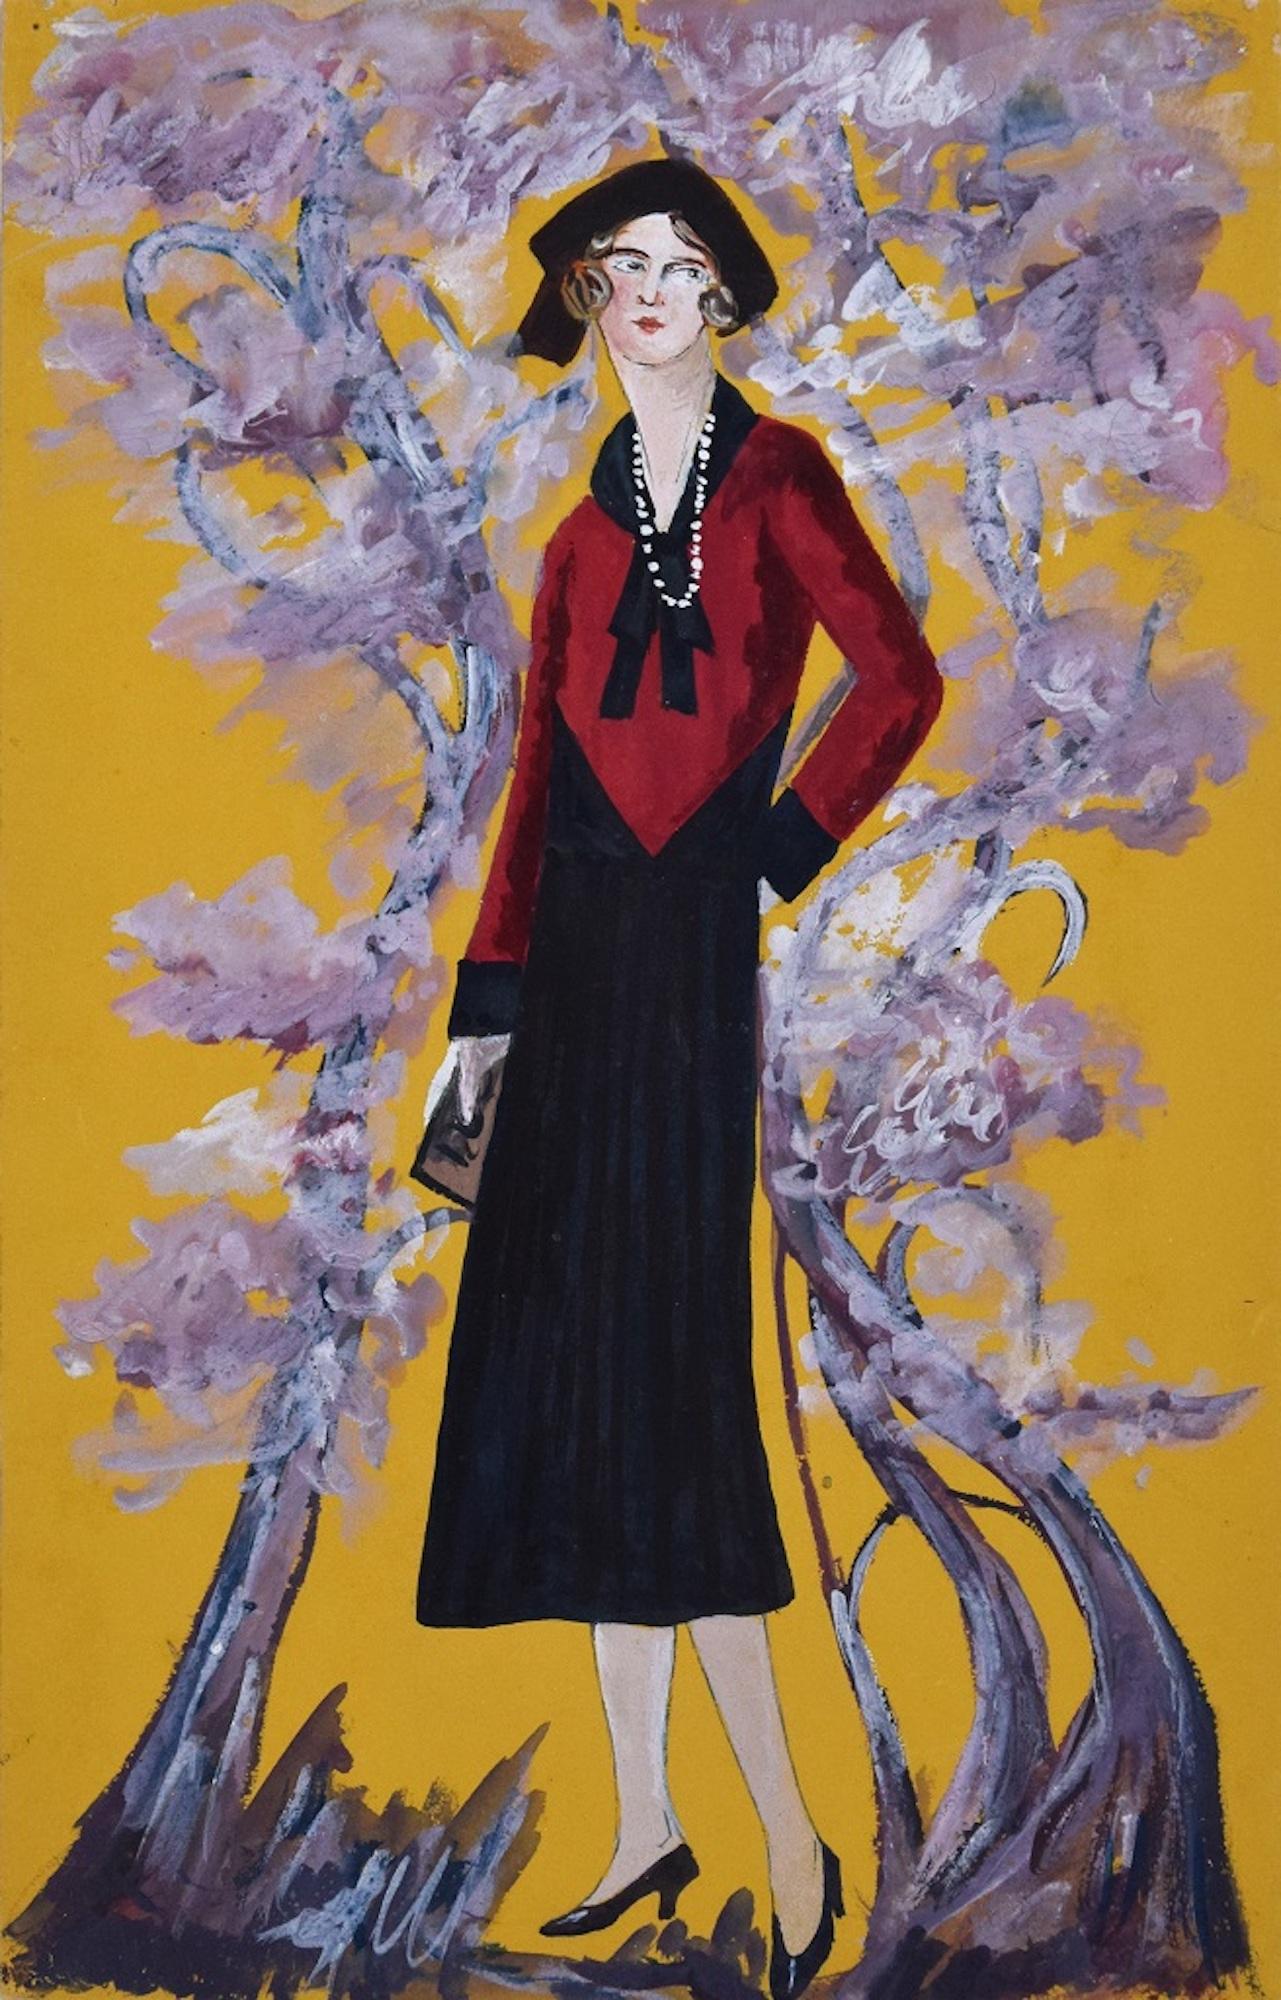 Madame dans le jardin fleuri est une peinture originale réalisée par Lucie Navier en 1931.

Tempera originale sur papier. 

Très bonnes conditions. 

Composition colorée représentant une figure féminine vêtue d'un costume élégant sur un fond jaune